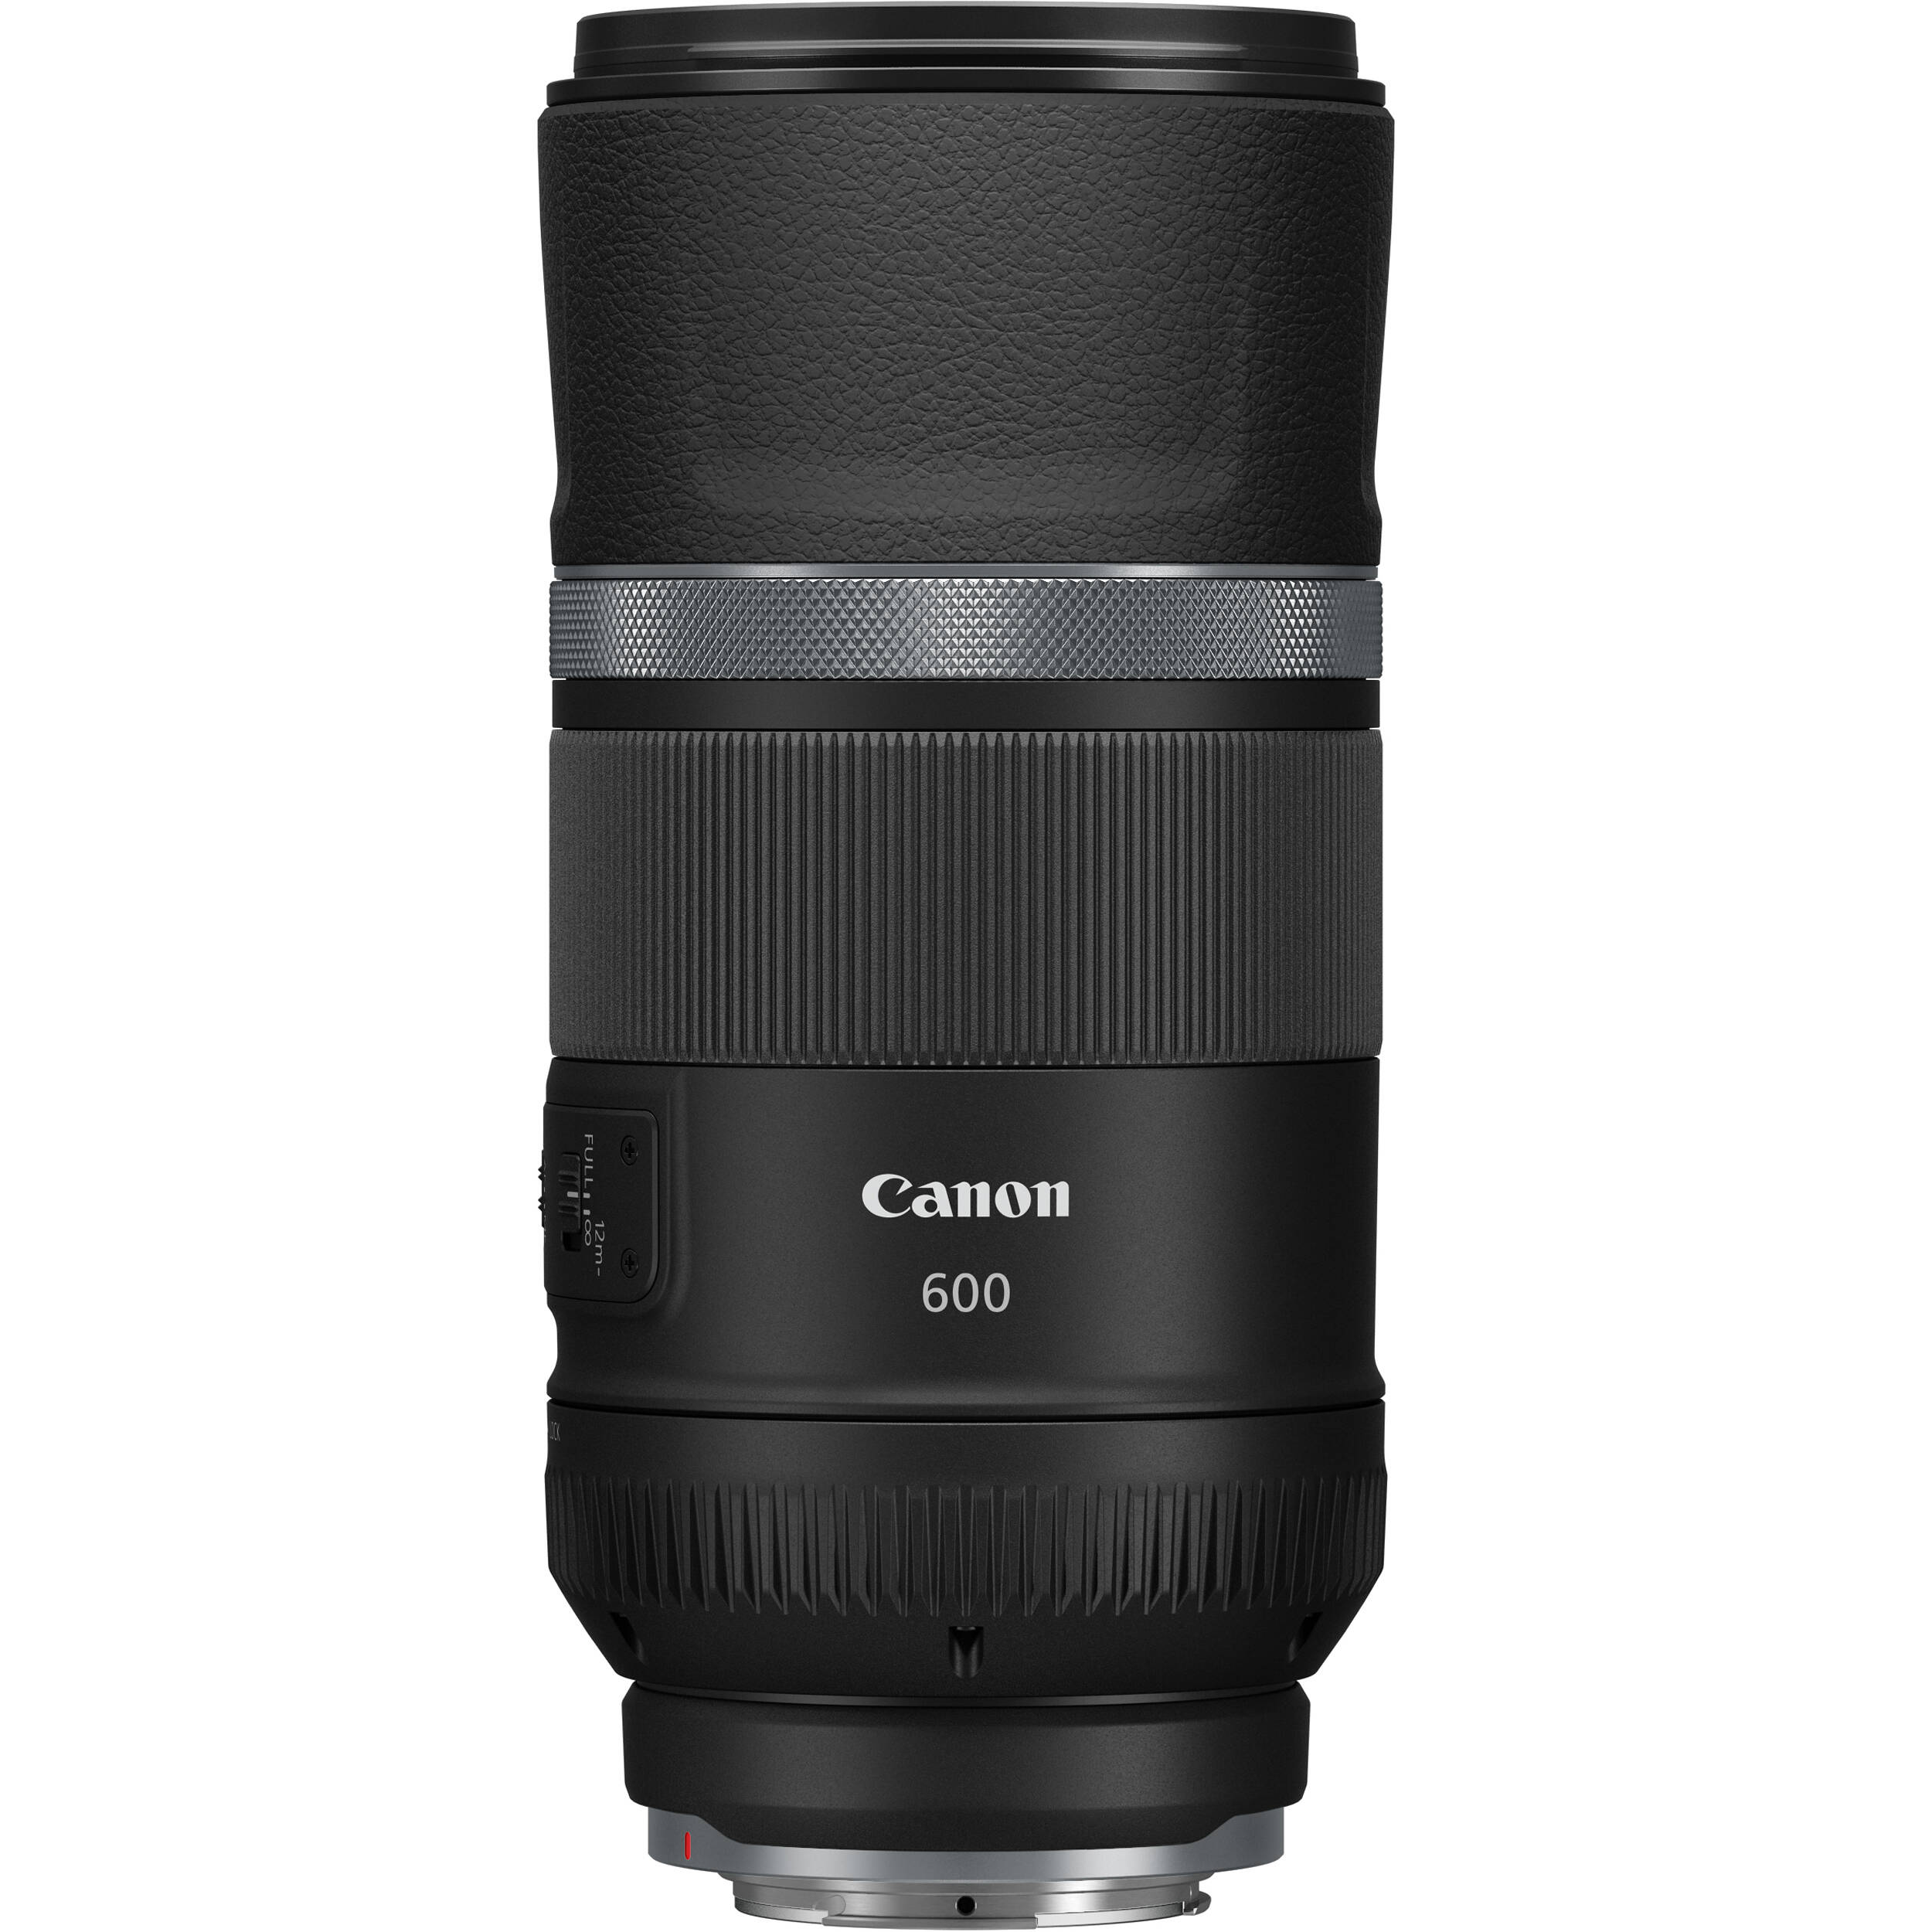 Ống kính Canon RF 600mm F11 IS STM (Mới 100%) Bảo hành chính hãng 02 năm trên toàn quốc Cover